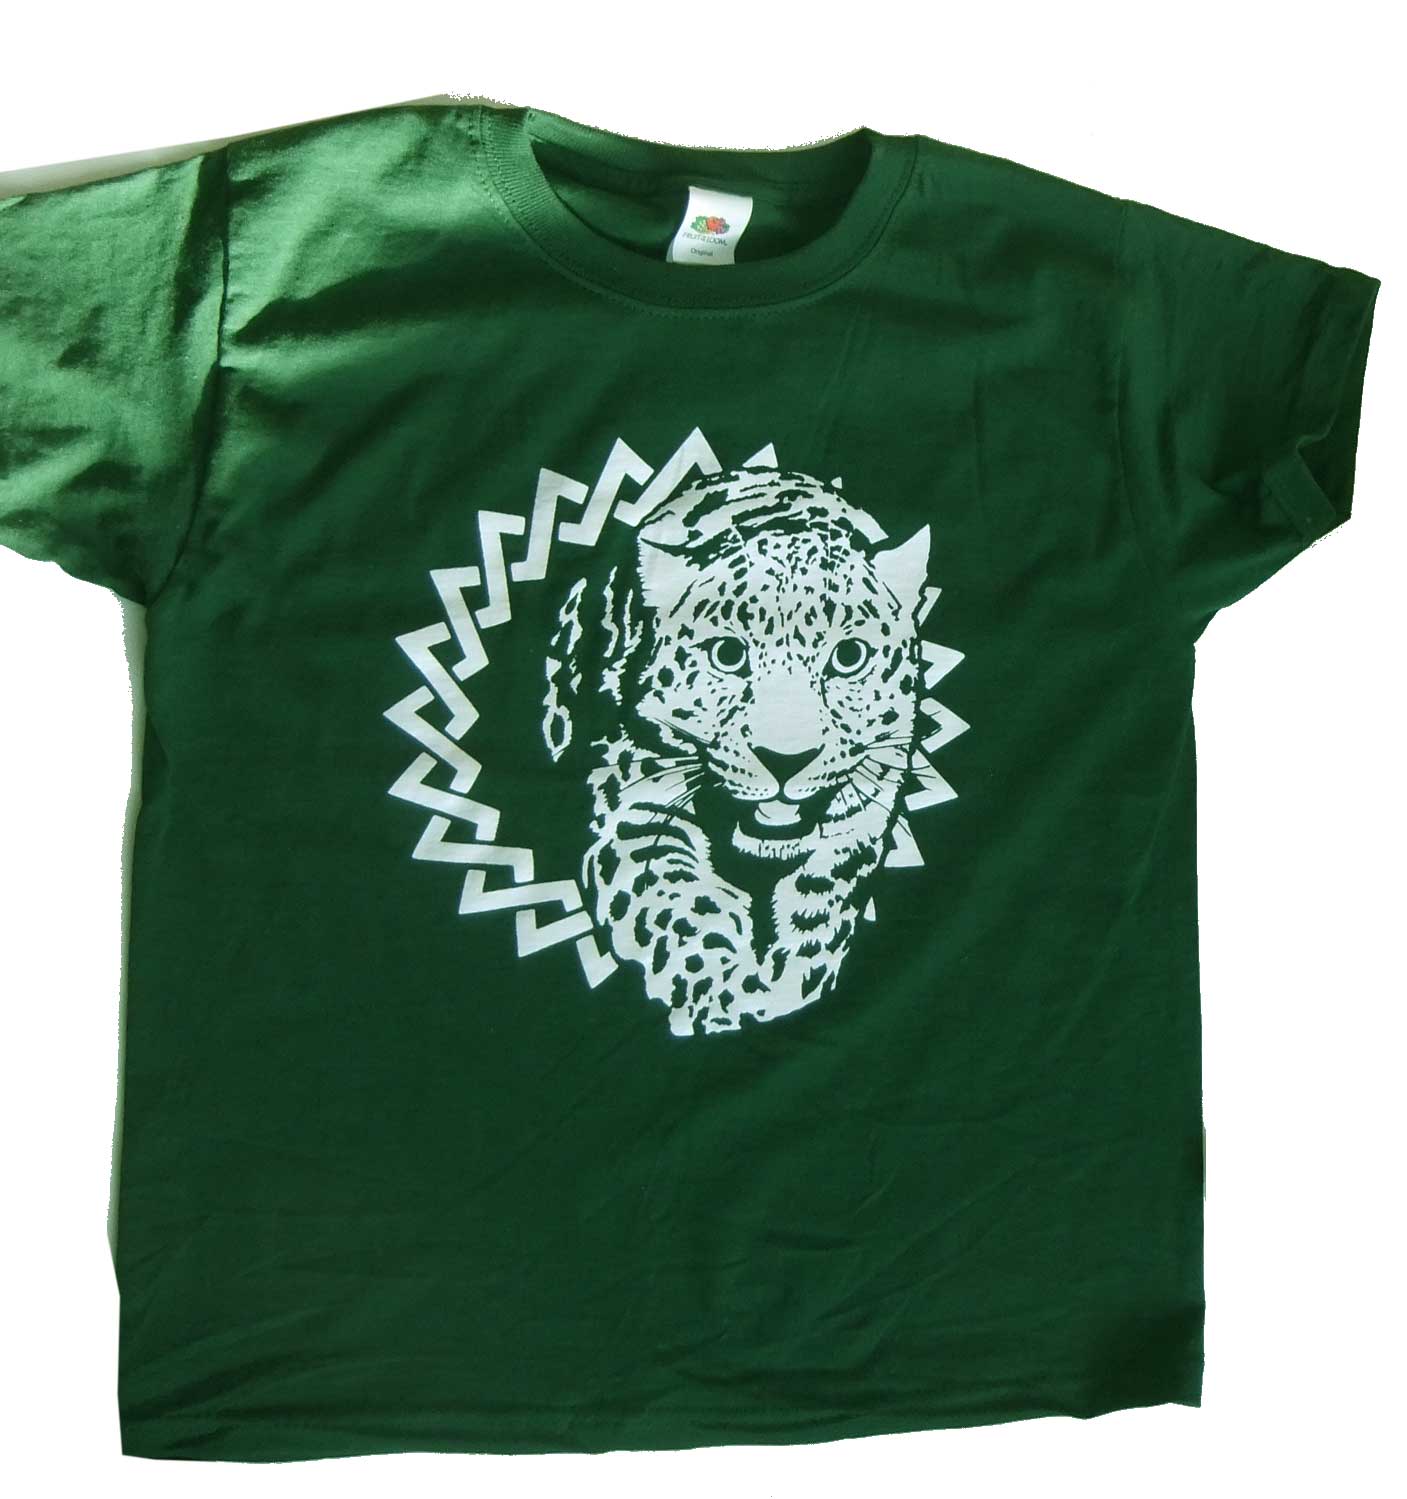 LEOPARD – T-shirt green